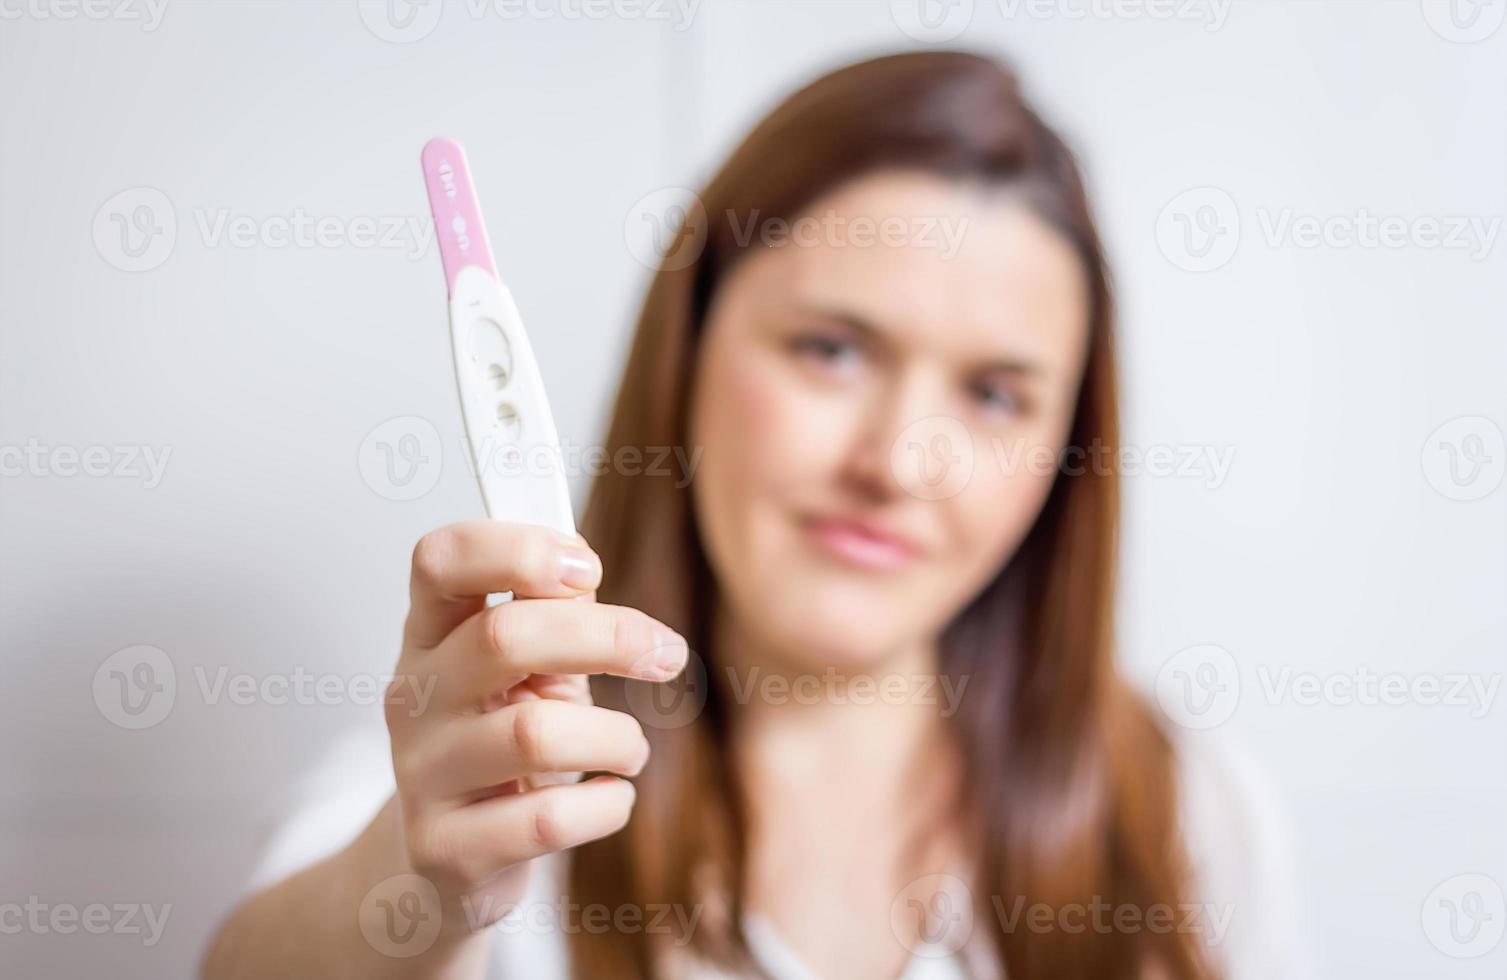 mulher feliz, mostrando seu teste de gravidez positivo foto